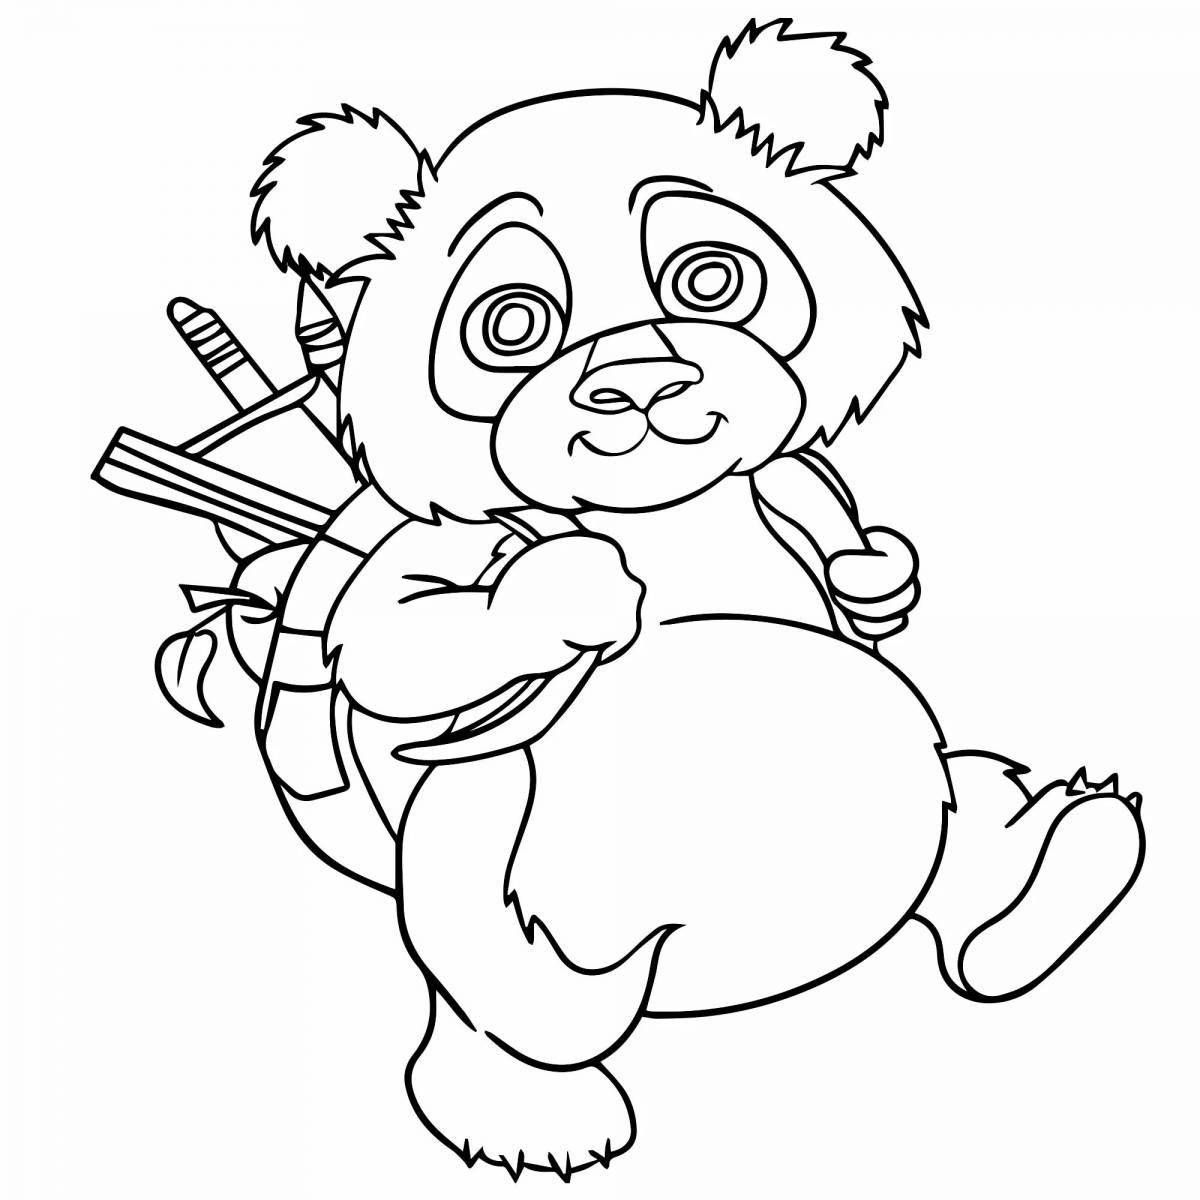 Играбельная панда-раскраска для детей